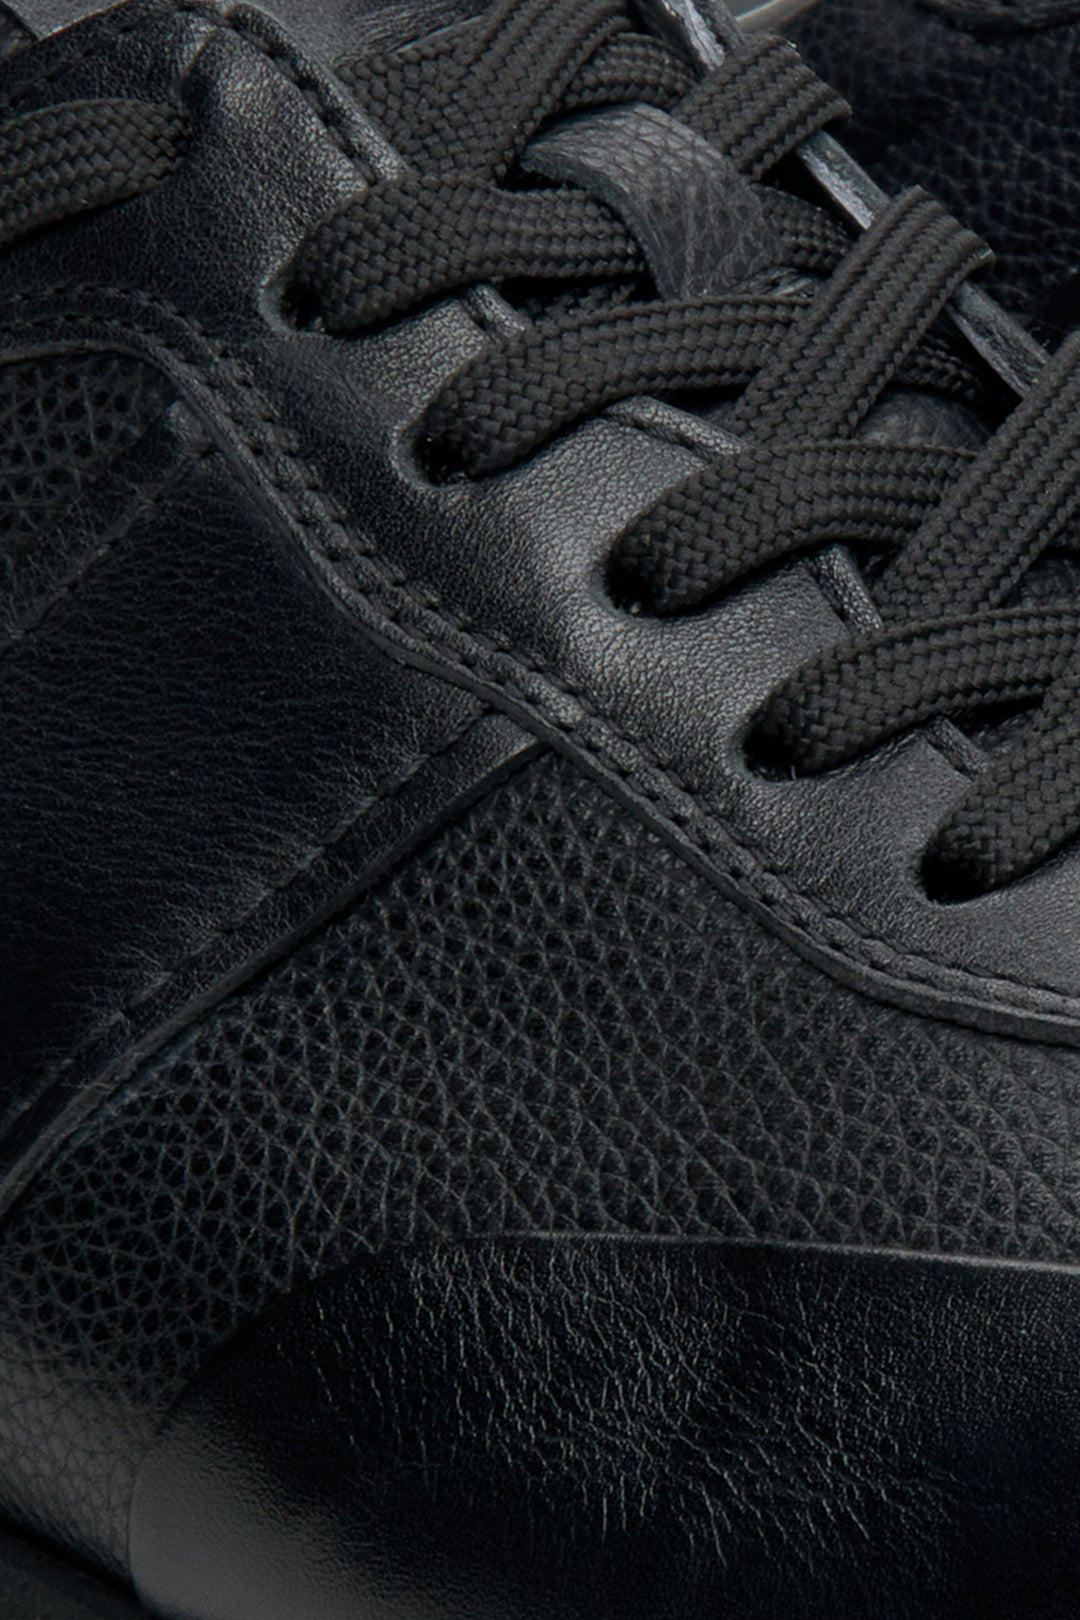 Skórzane sneakersy męskie w kolorze czarnym marki Estro - zbliżenie na detale.